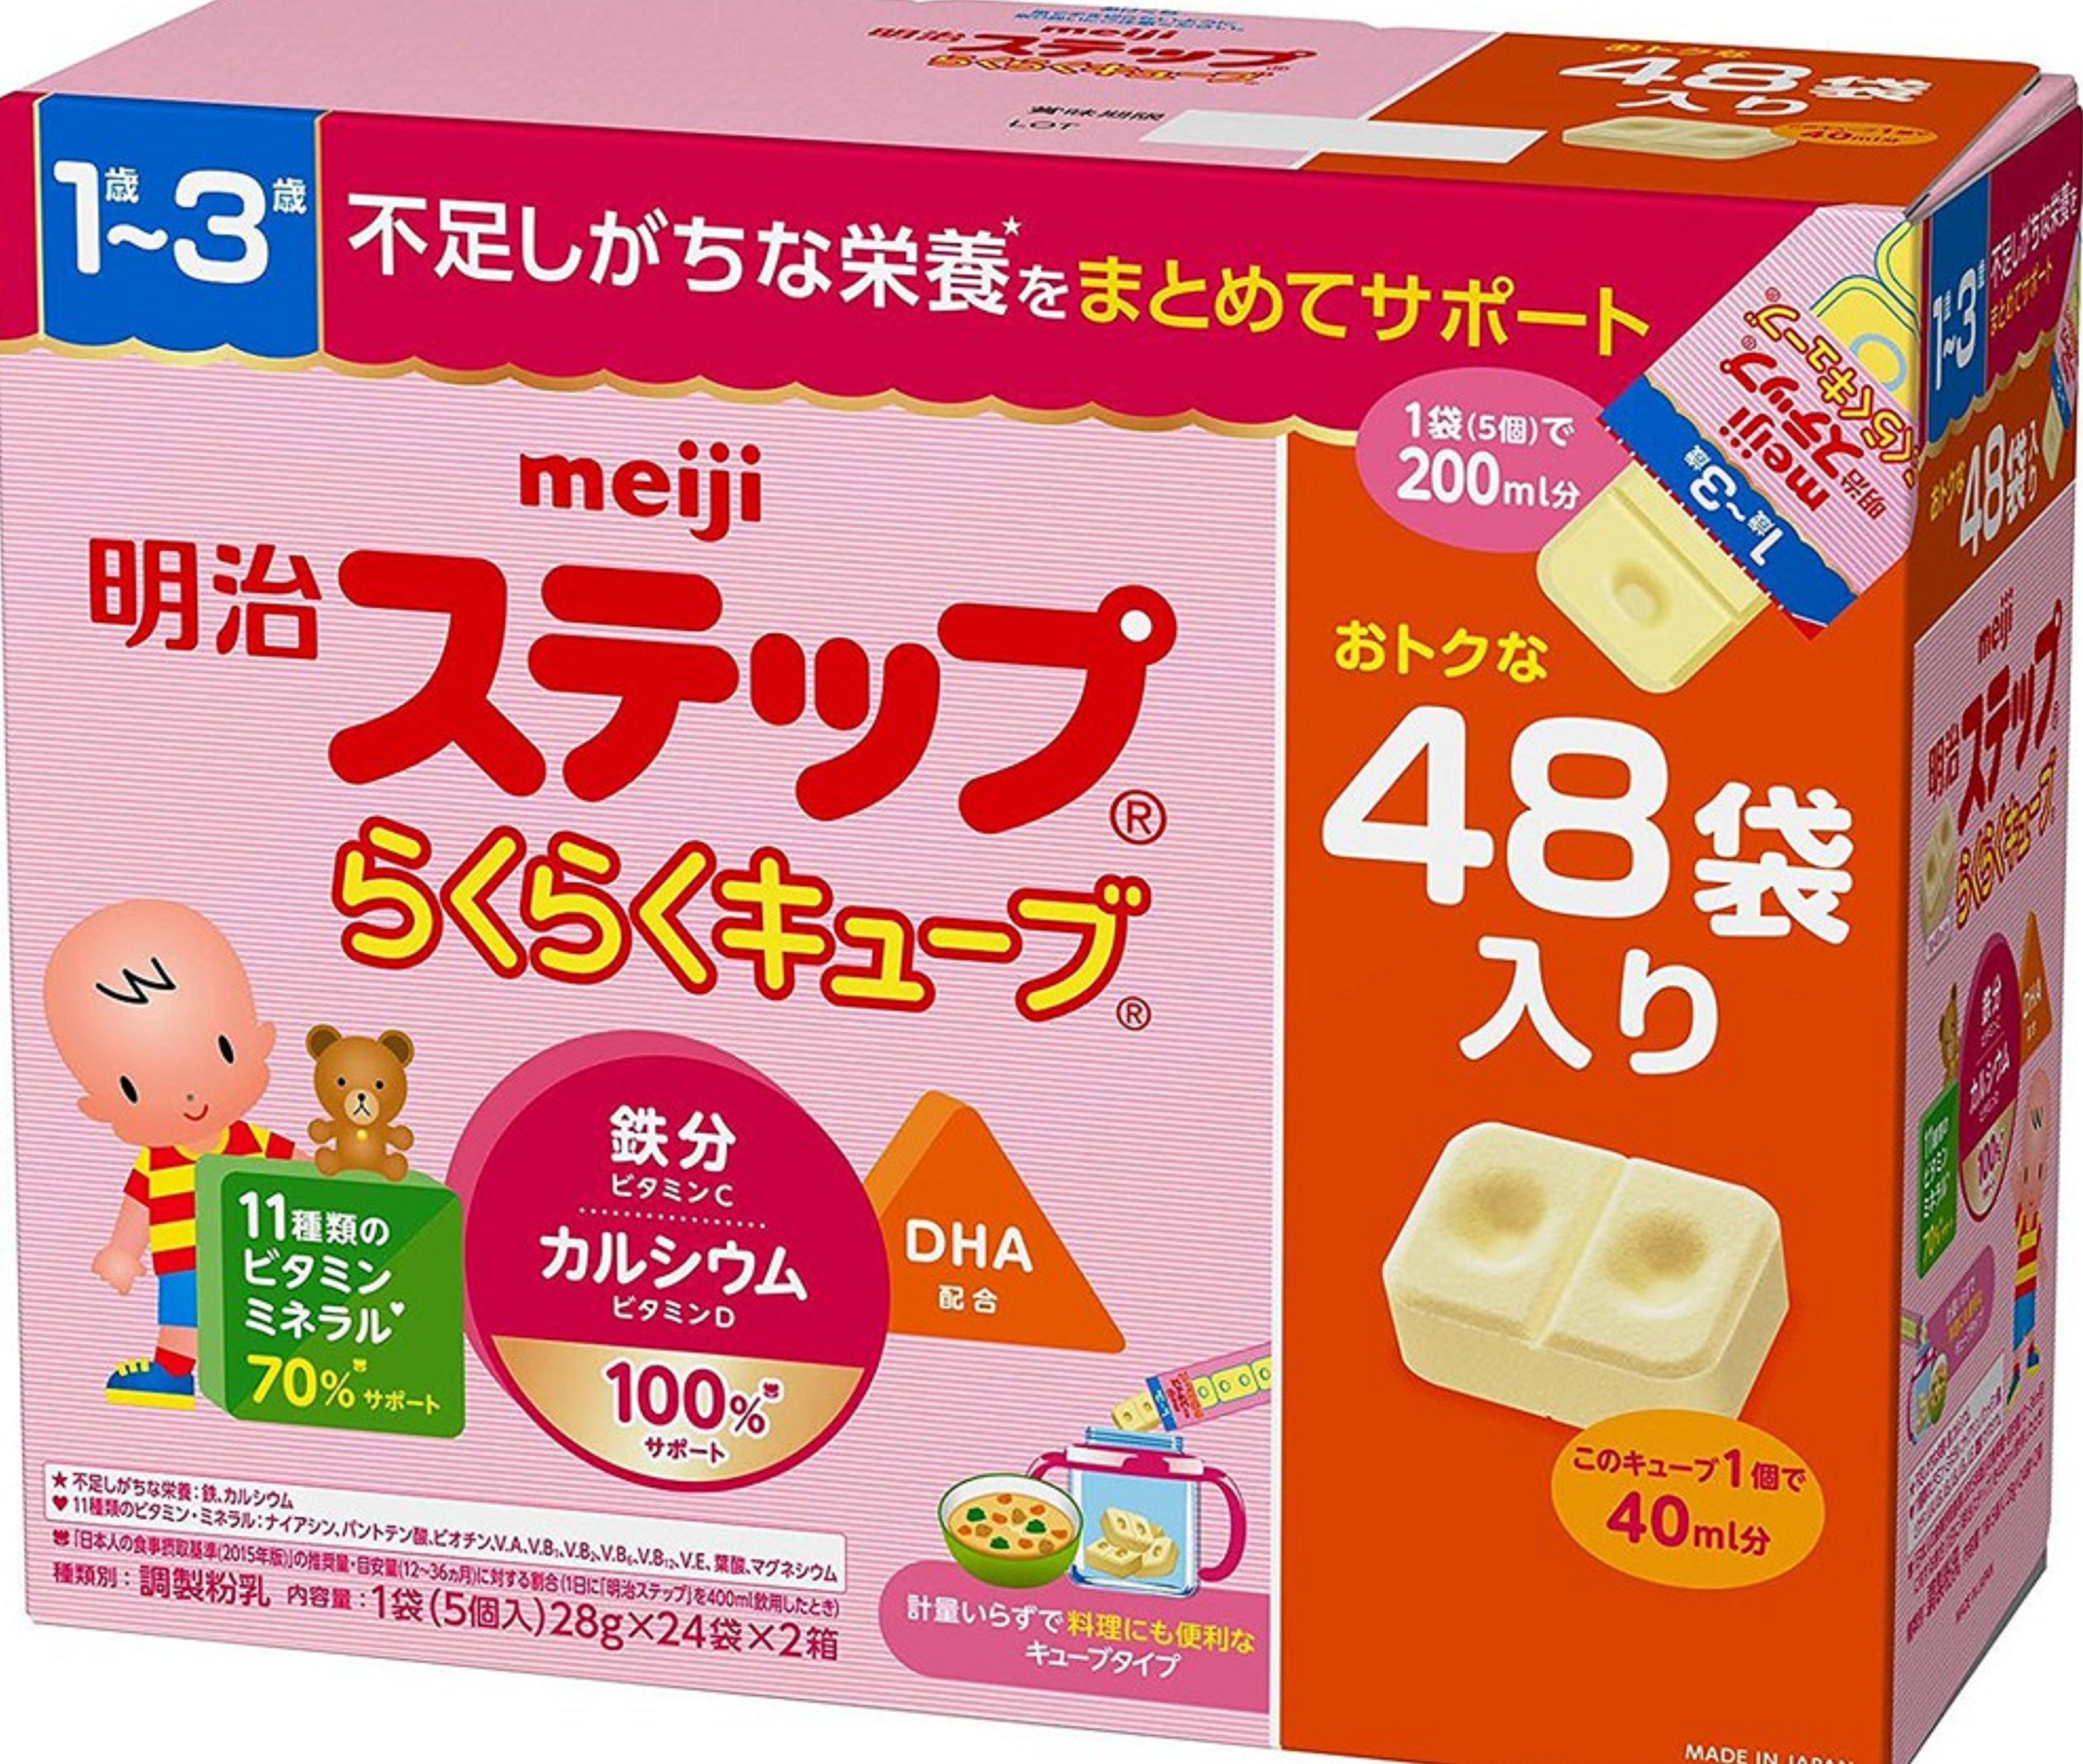 Sữa Meiji thanh số 0 nội địa Nhật